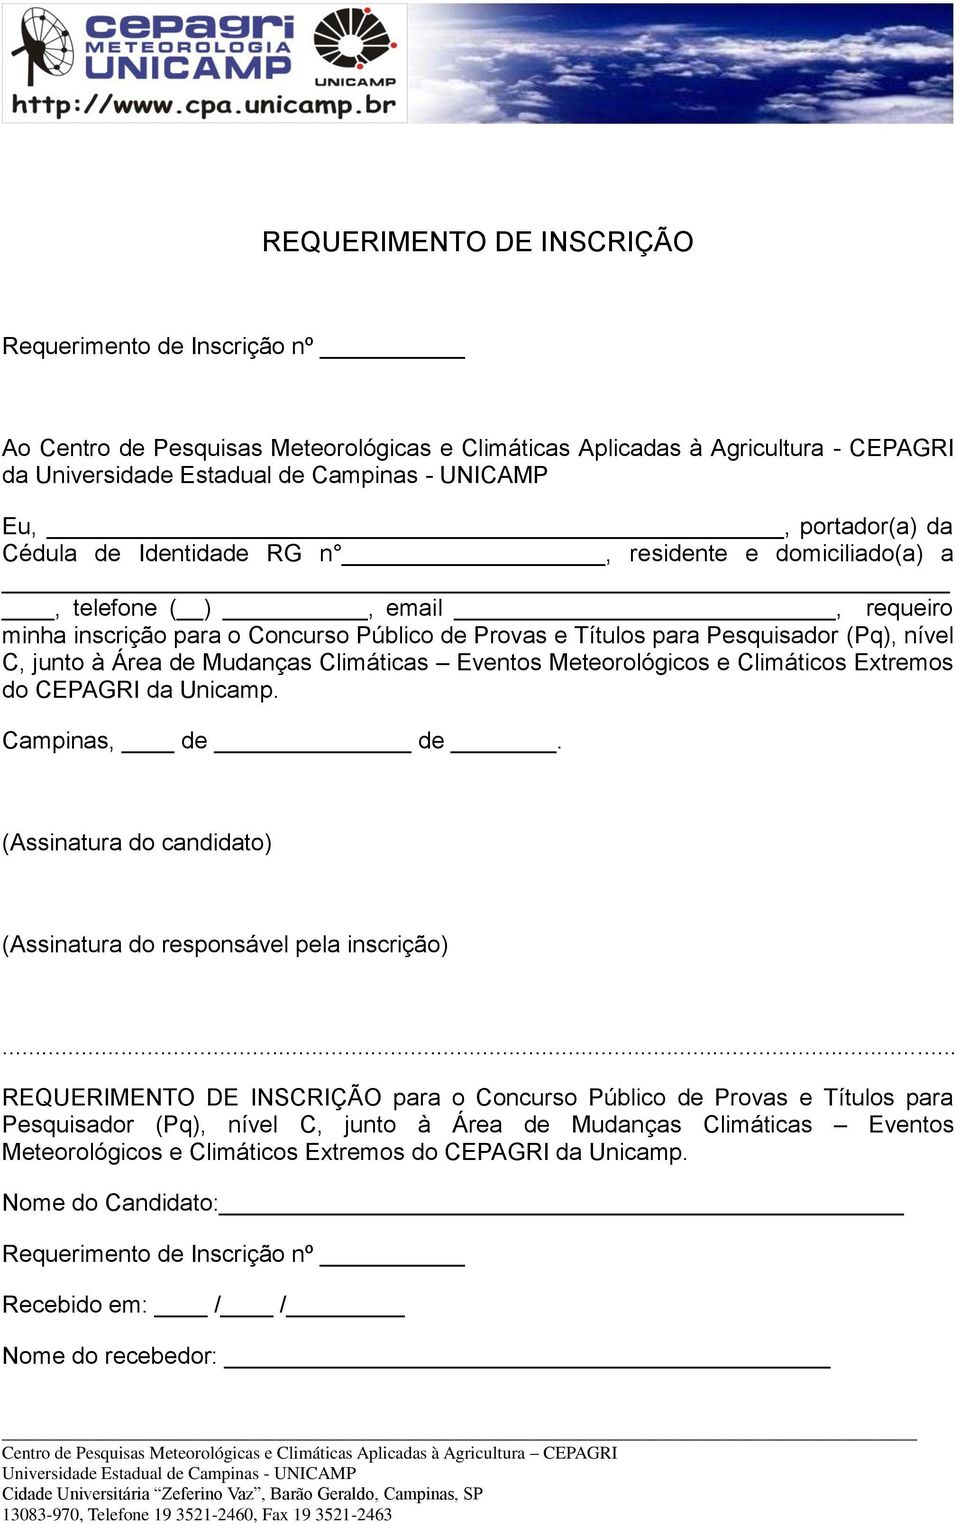 Meteorológicos e Climáticos Extremos do CEPAGRI da Unicamp. Campinas, de de. (Assinatura do candidato) (Assinatura do responsável pela inscrição).